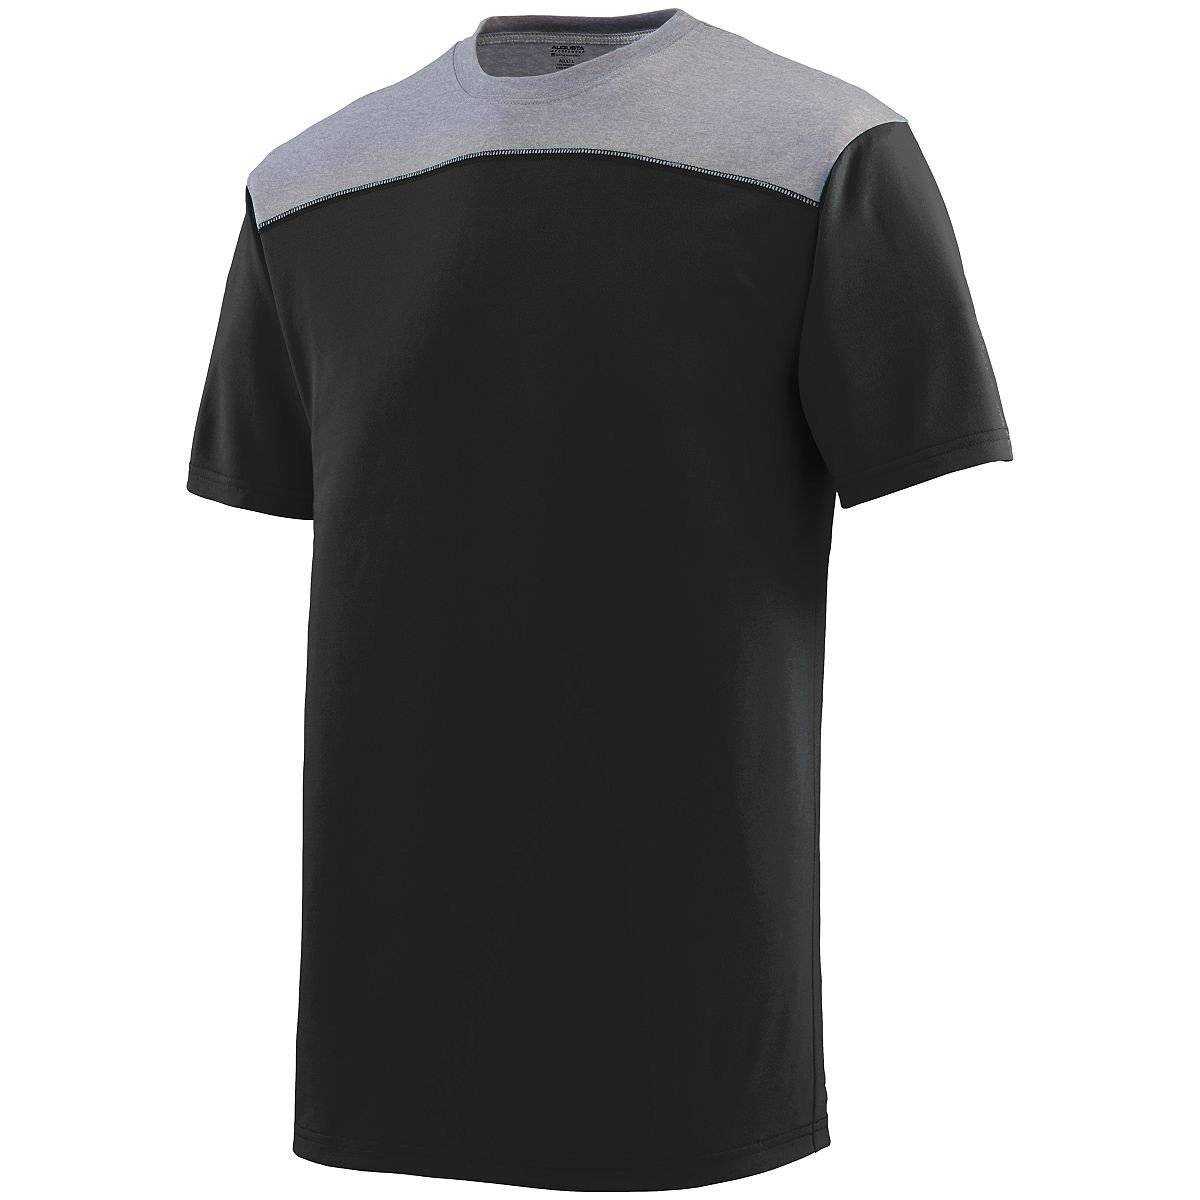 Augusta 3055 Challenge T-Shirt - Black Dark Gray - HIT a Double